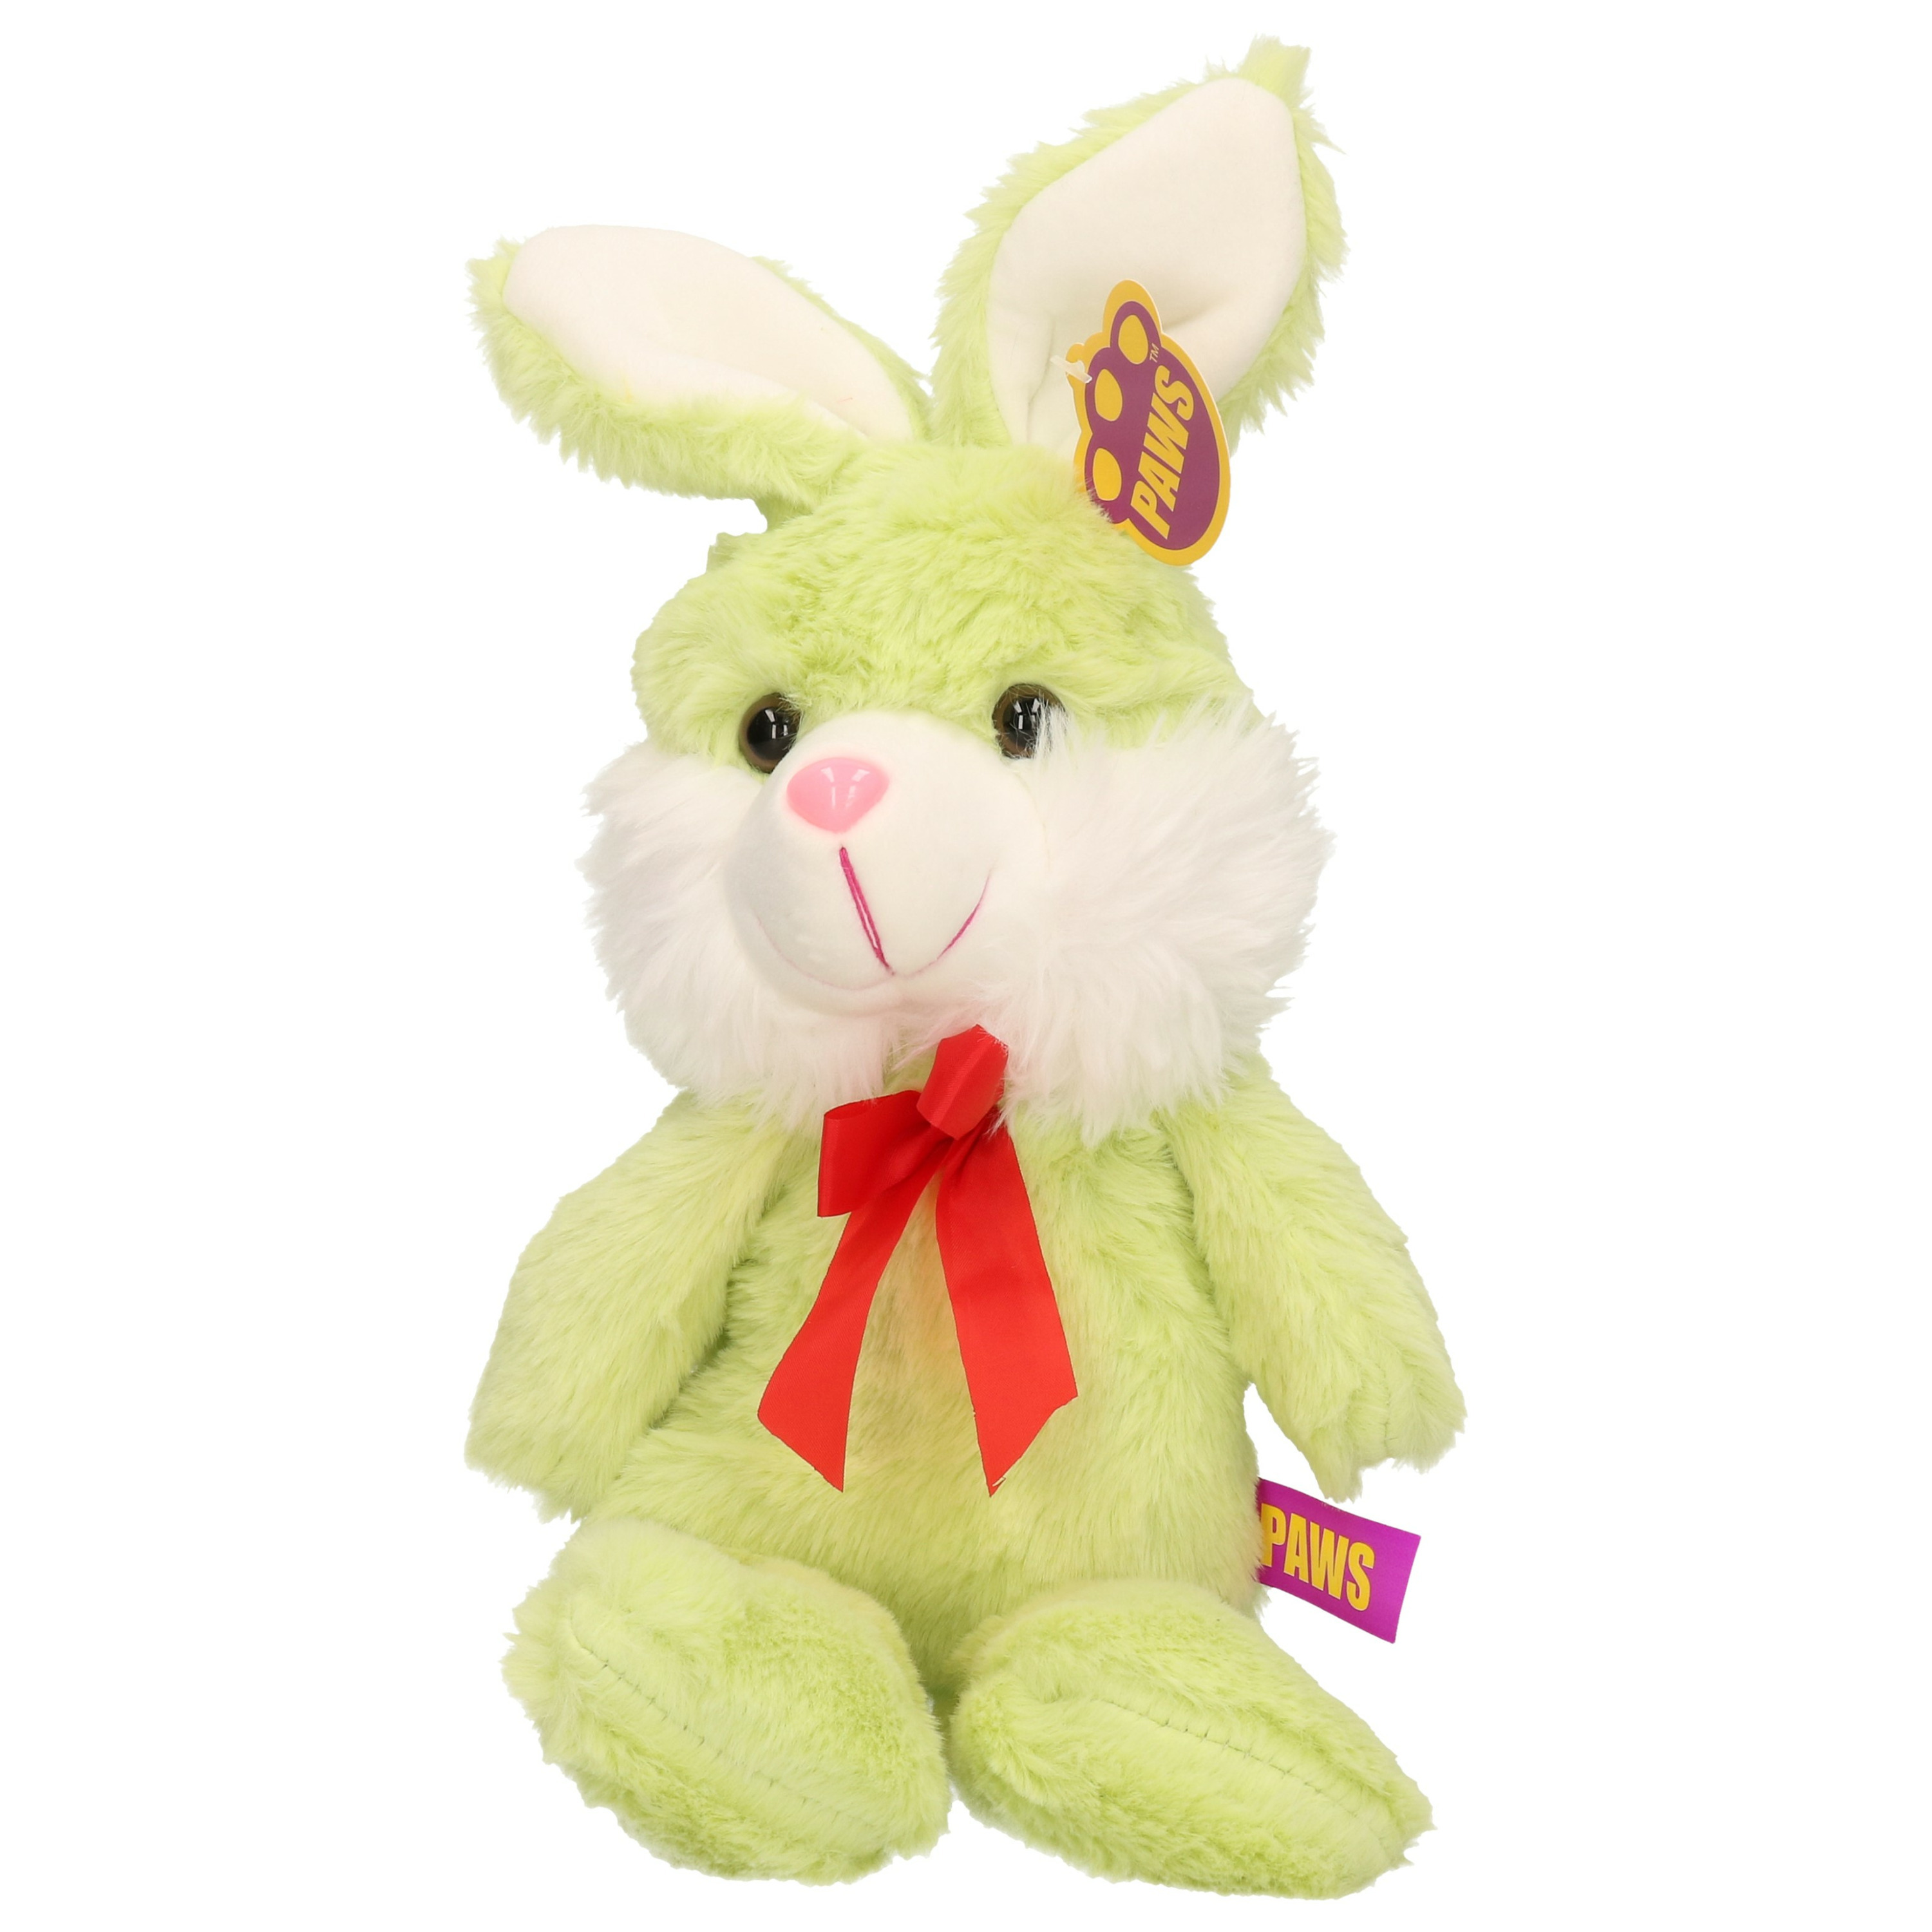 Paashaas-haas-konijn knuffel dier zachte pluche groen cadeau 32 cm met strikje